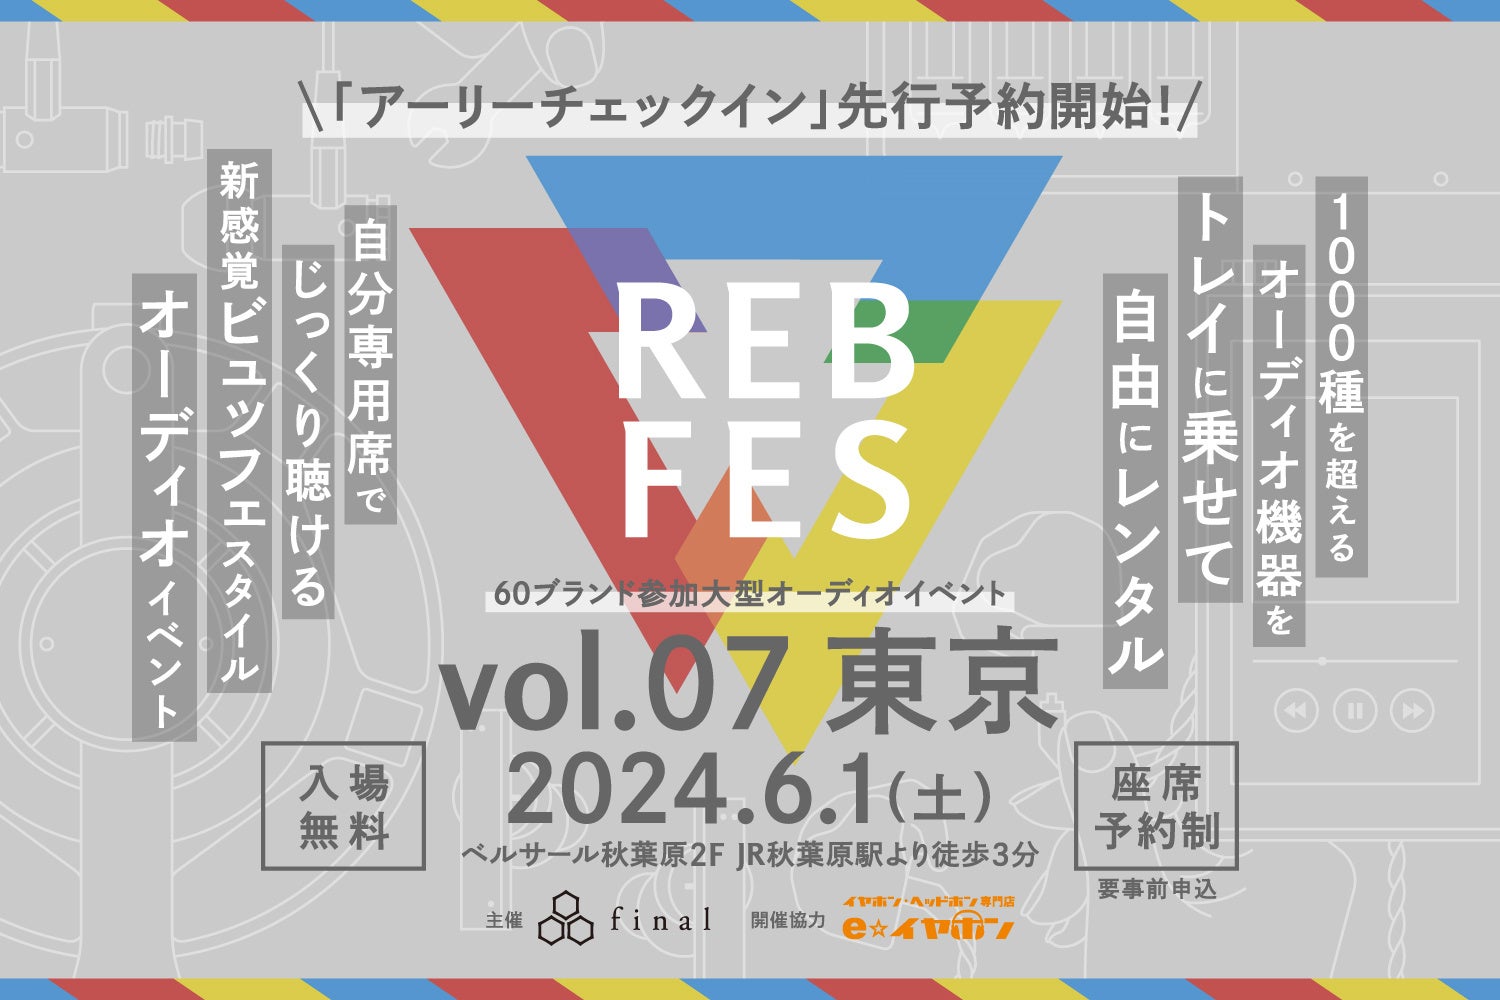 1000種を超えるオーディオ機器を自由に組み合わせて試聴できる新オーディオイベント「REB fes vol.07@東京」。「アーリーチェックイン」枠から座席予約申し込みがスタート！